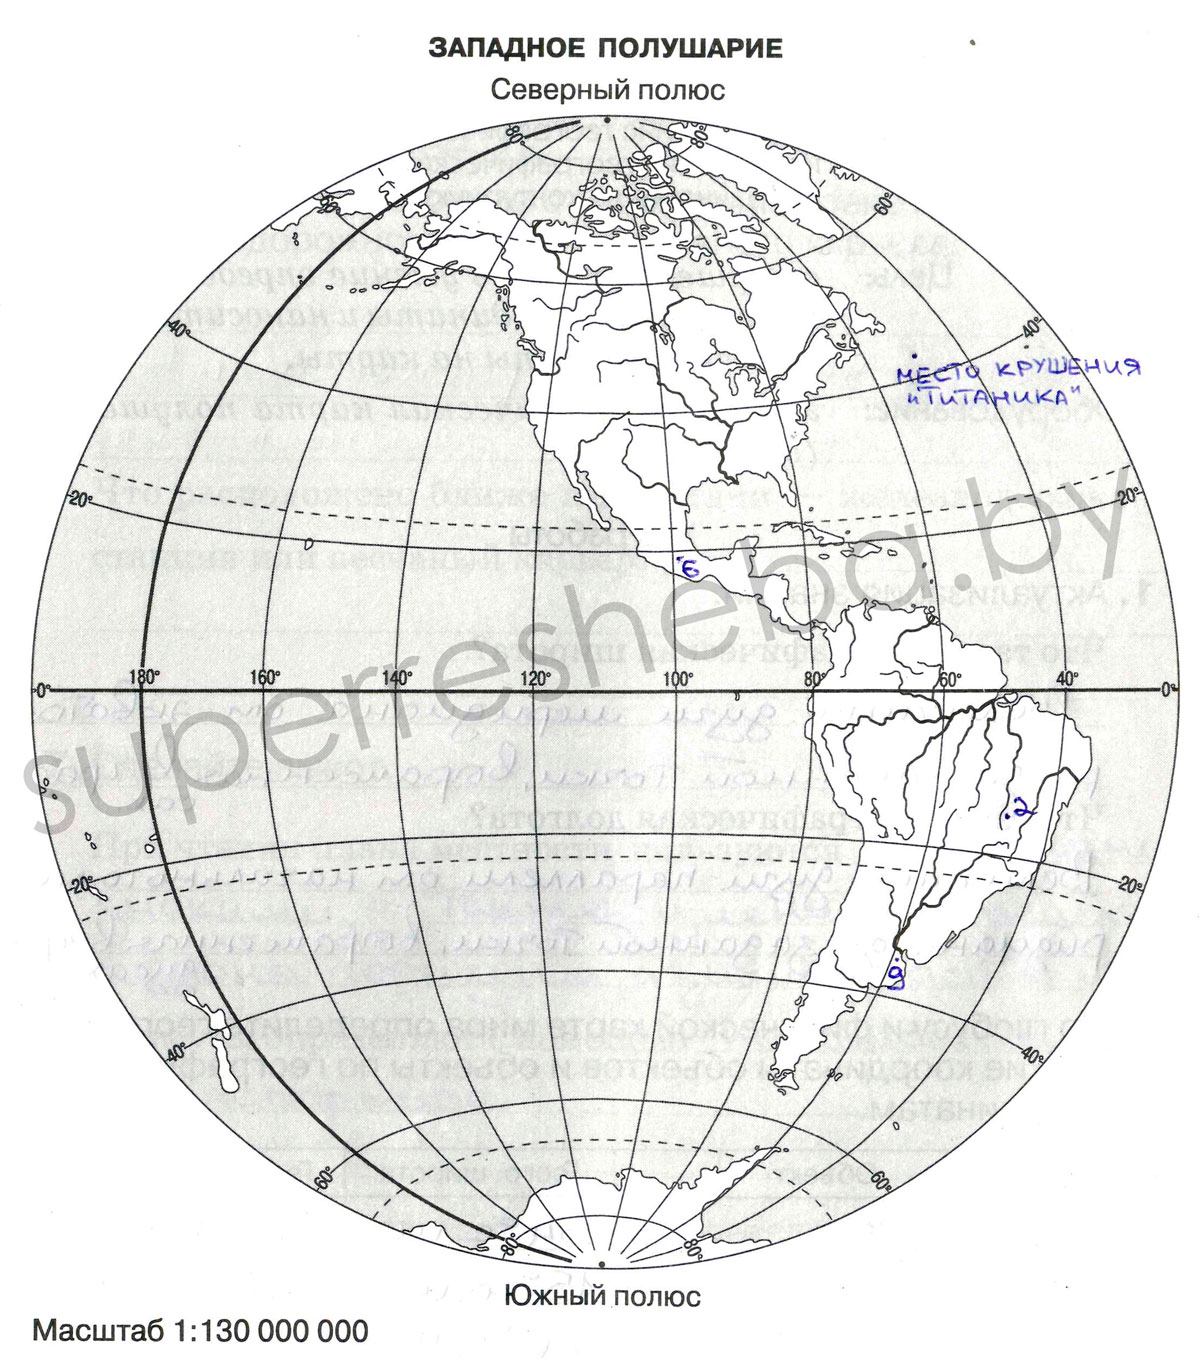 Вид изображения позволяющий подробно изучить расположение крупных географических объектов